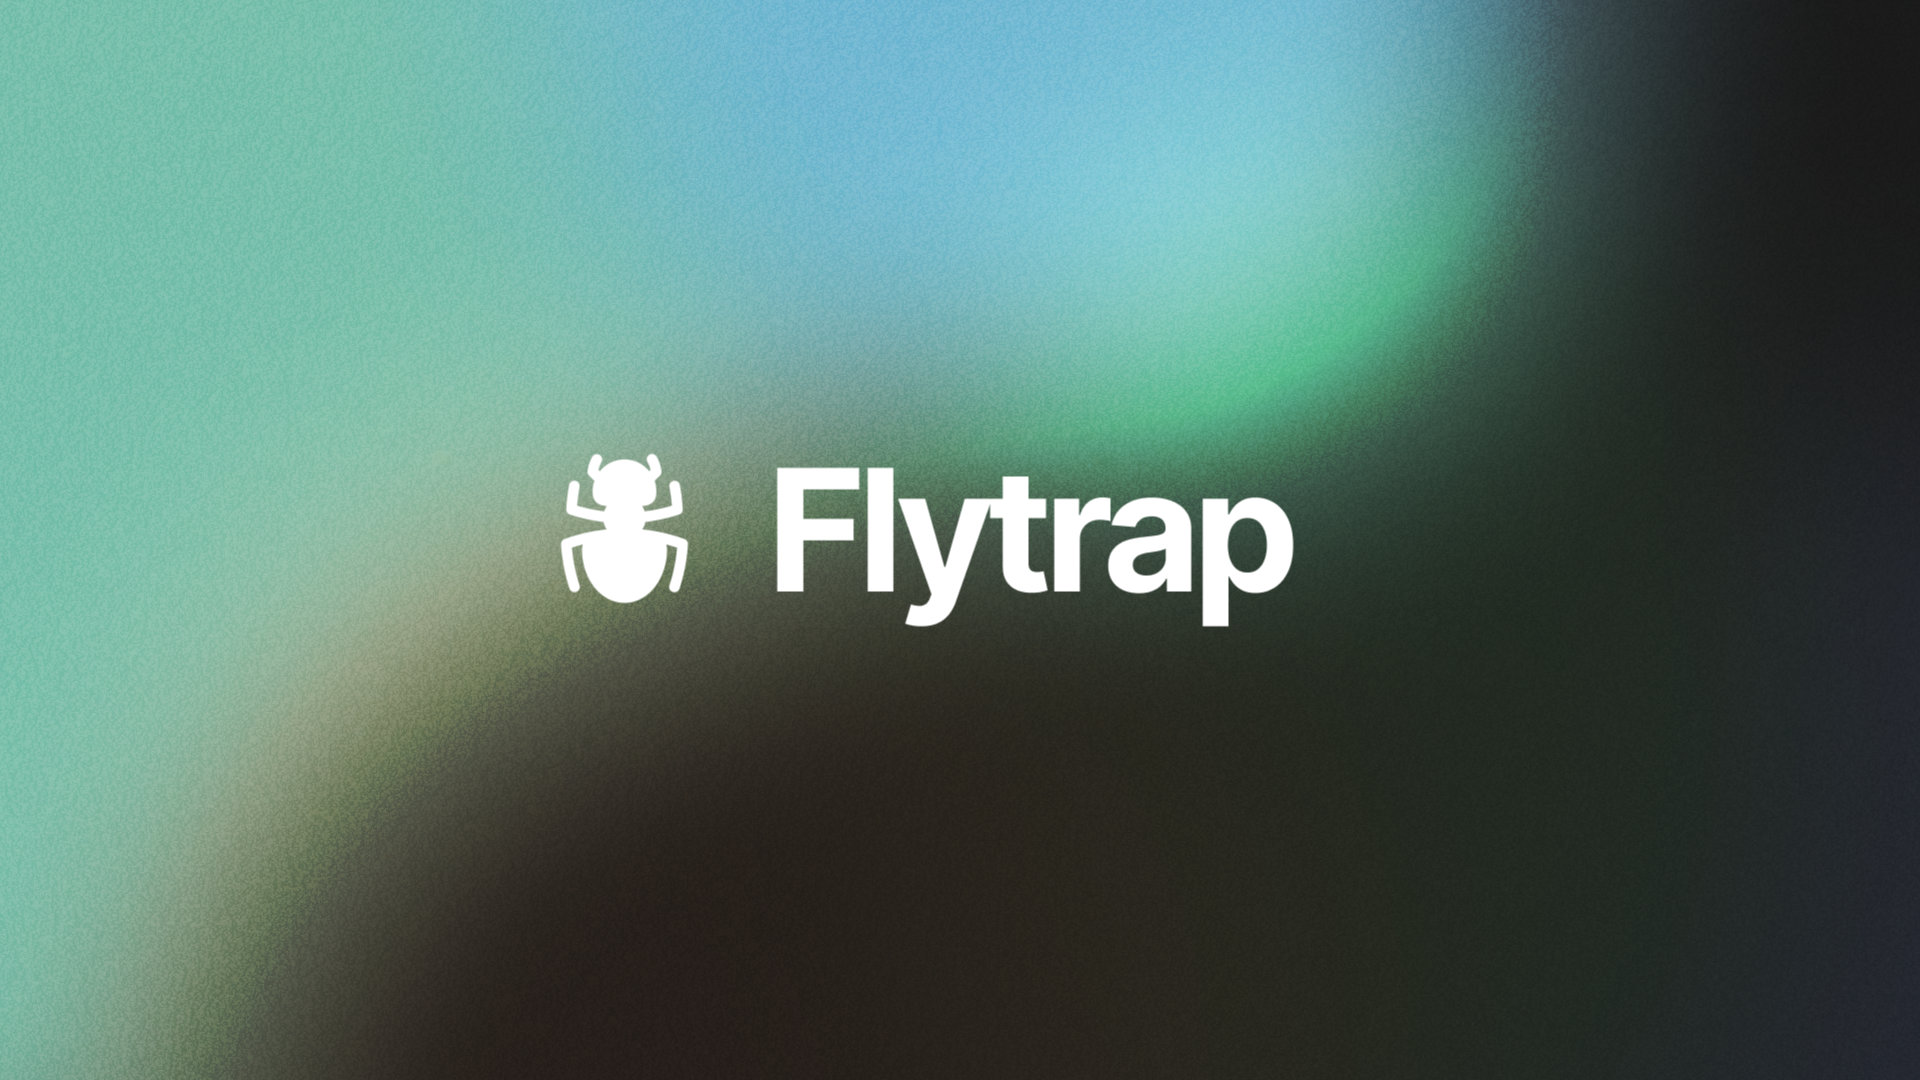 Introducing Flytrap